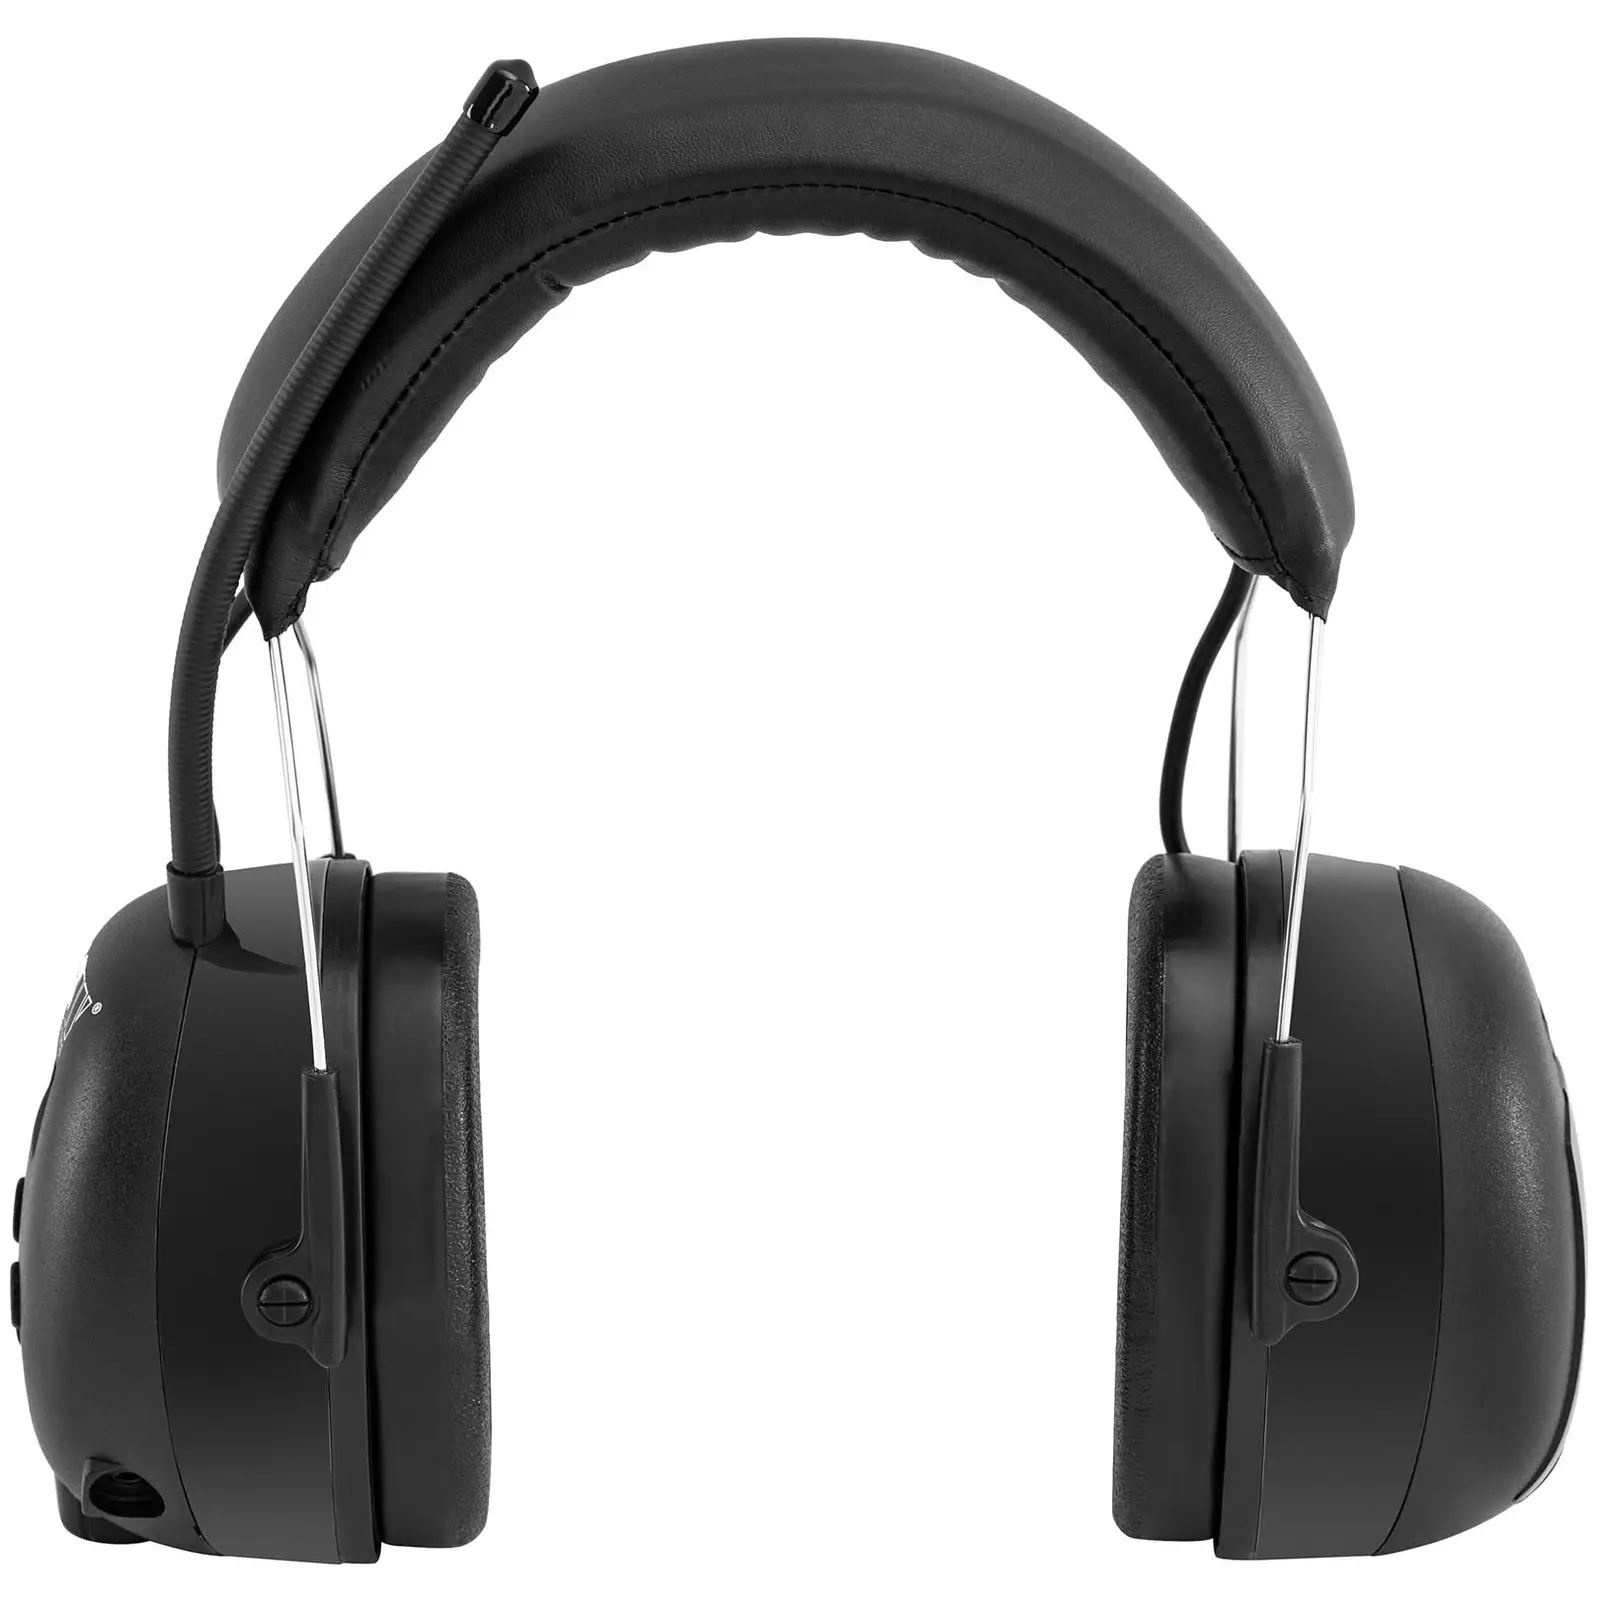 Bluetooth-kuulosuojaimet - Mikrofoni - LCD-näyttö - Ladattava akku - Musta